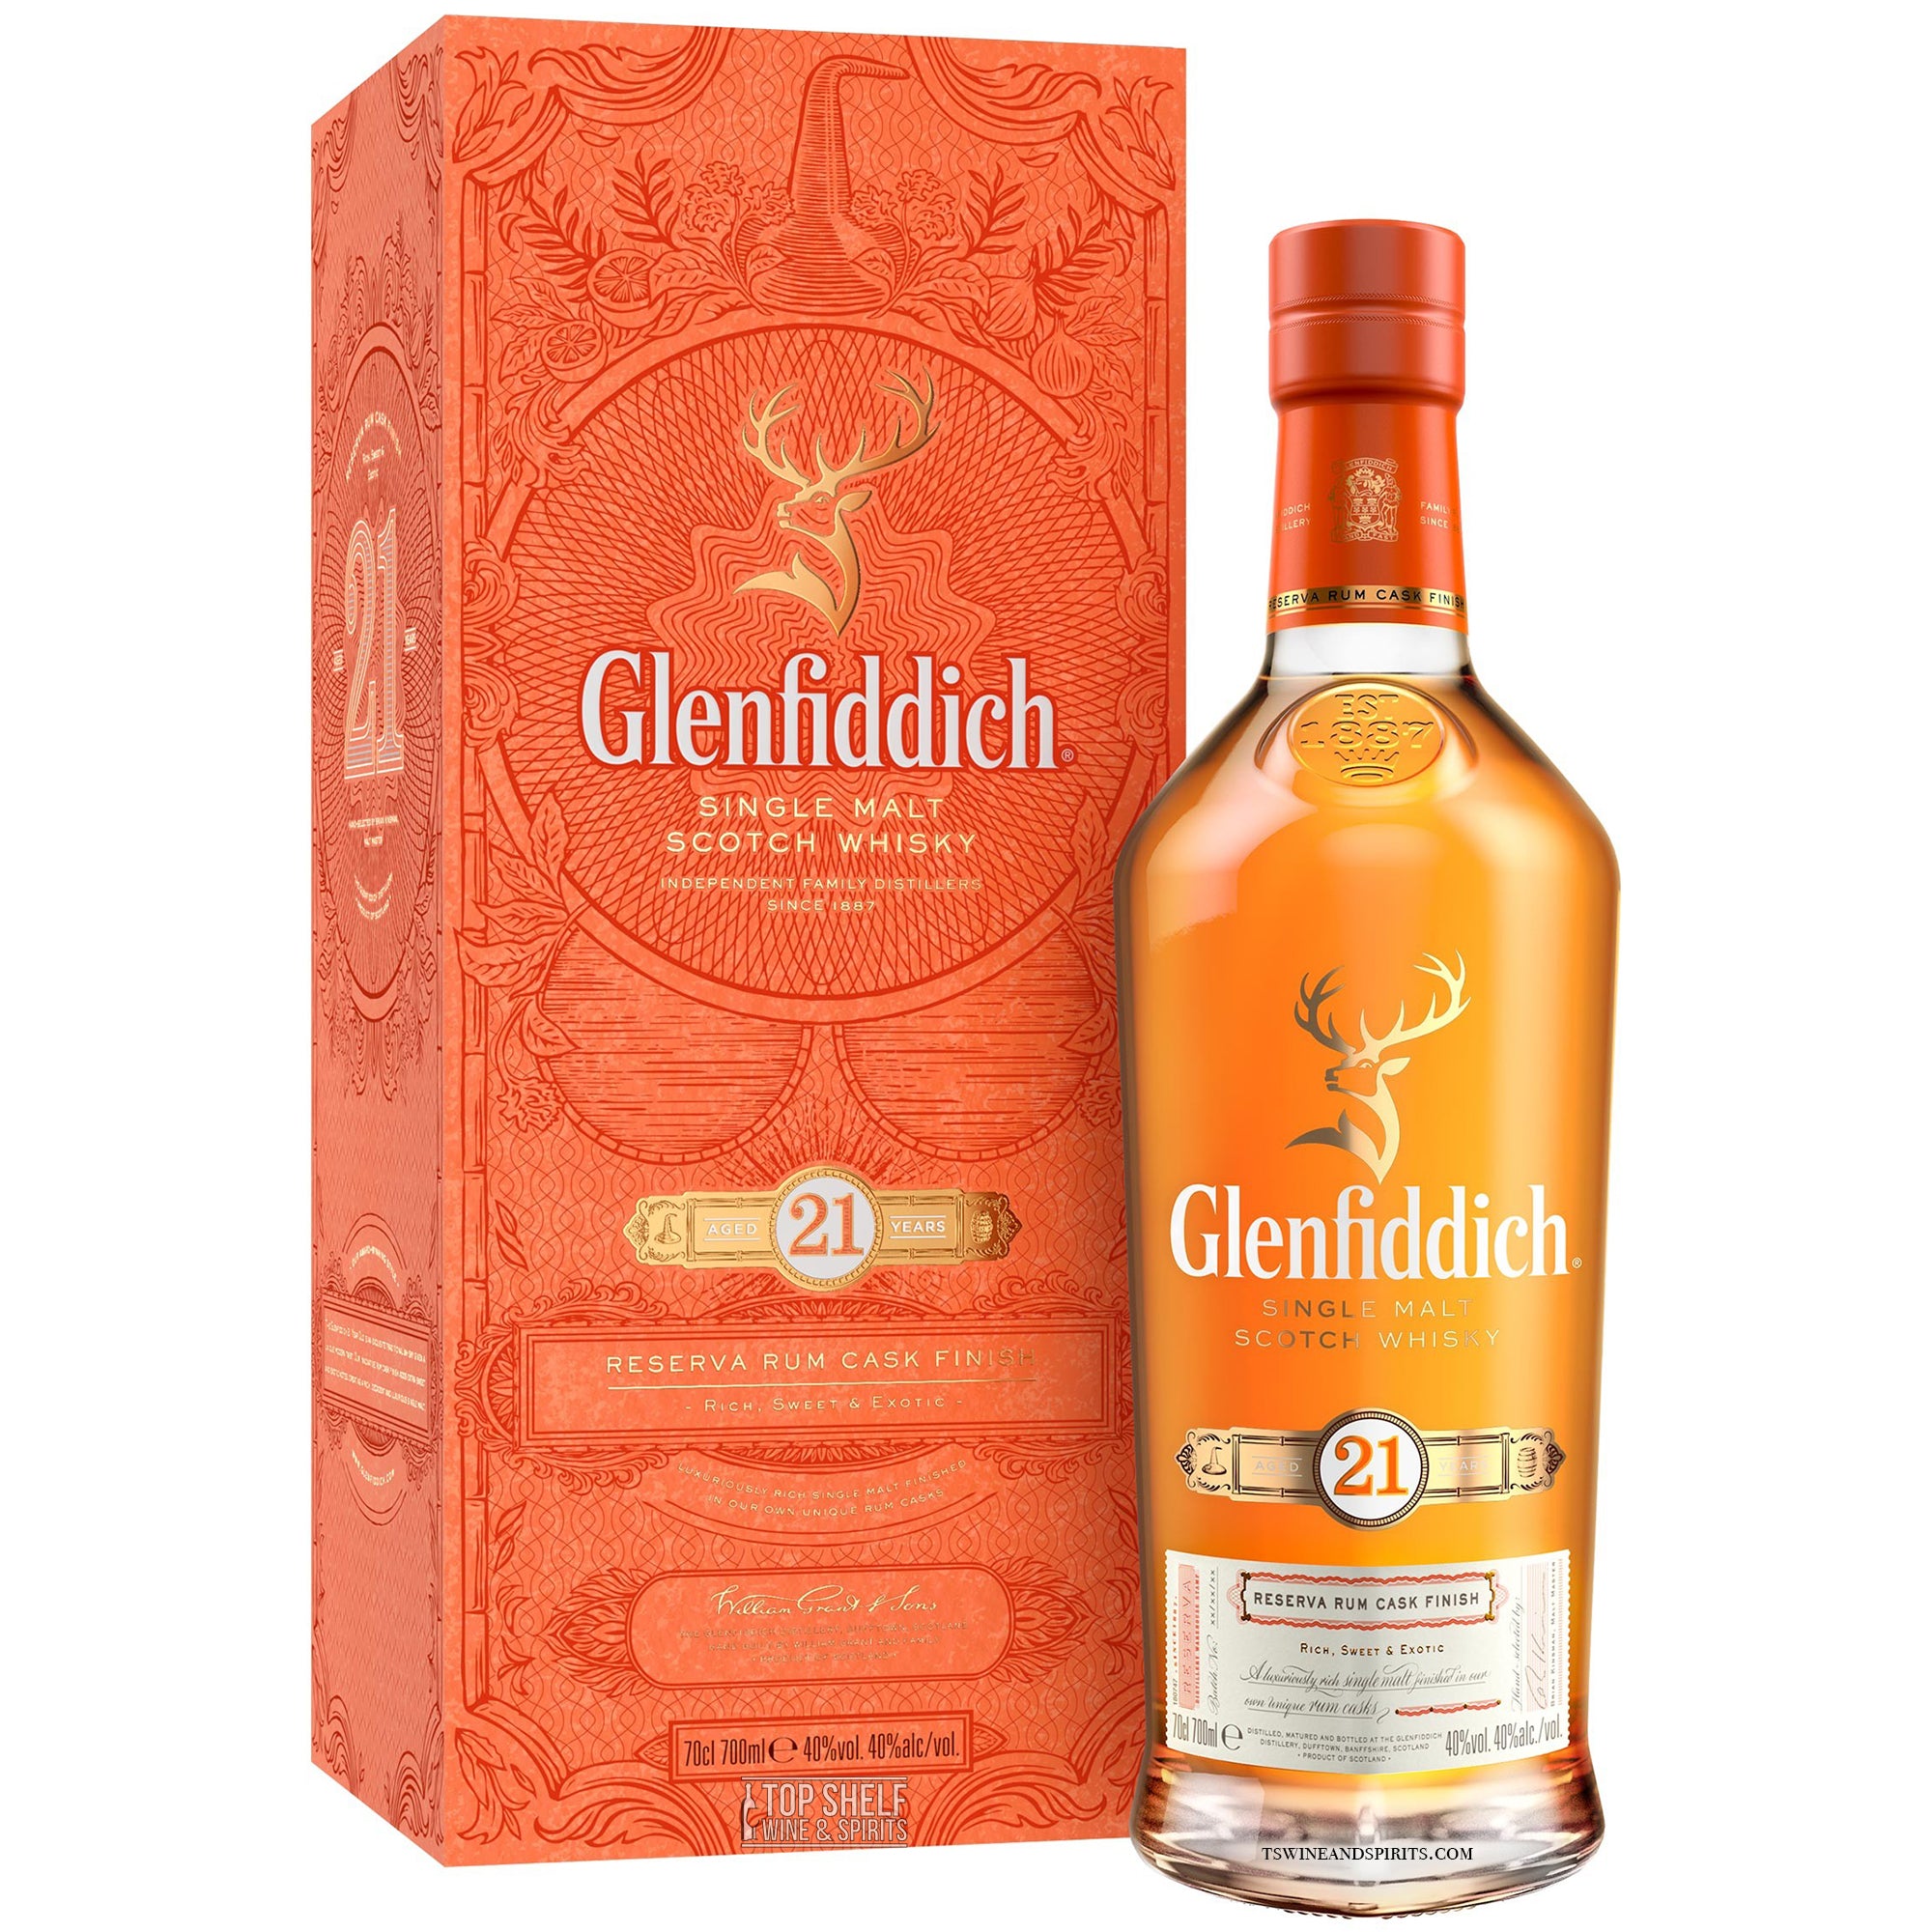 Glenfiddich Single Malt Scotch 21 Year